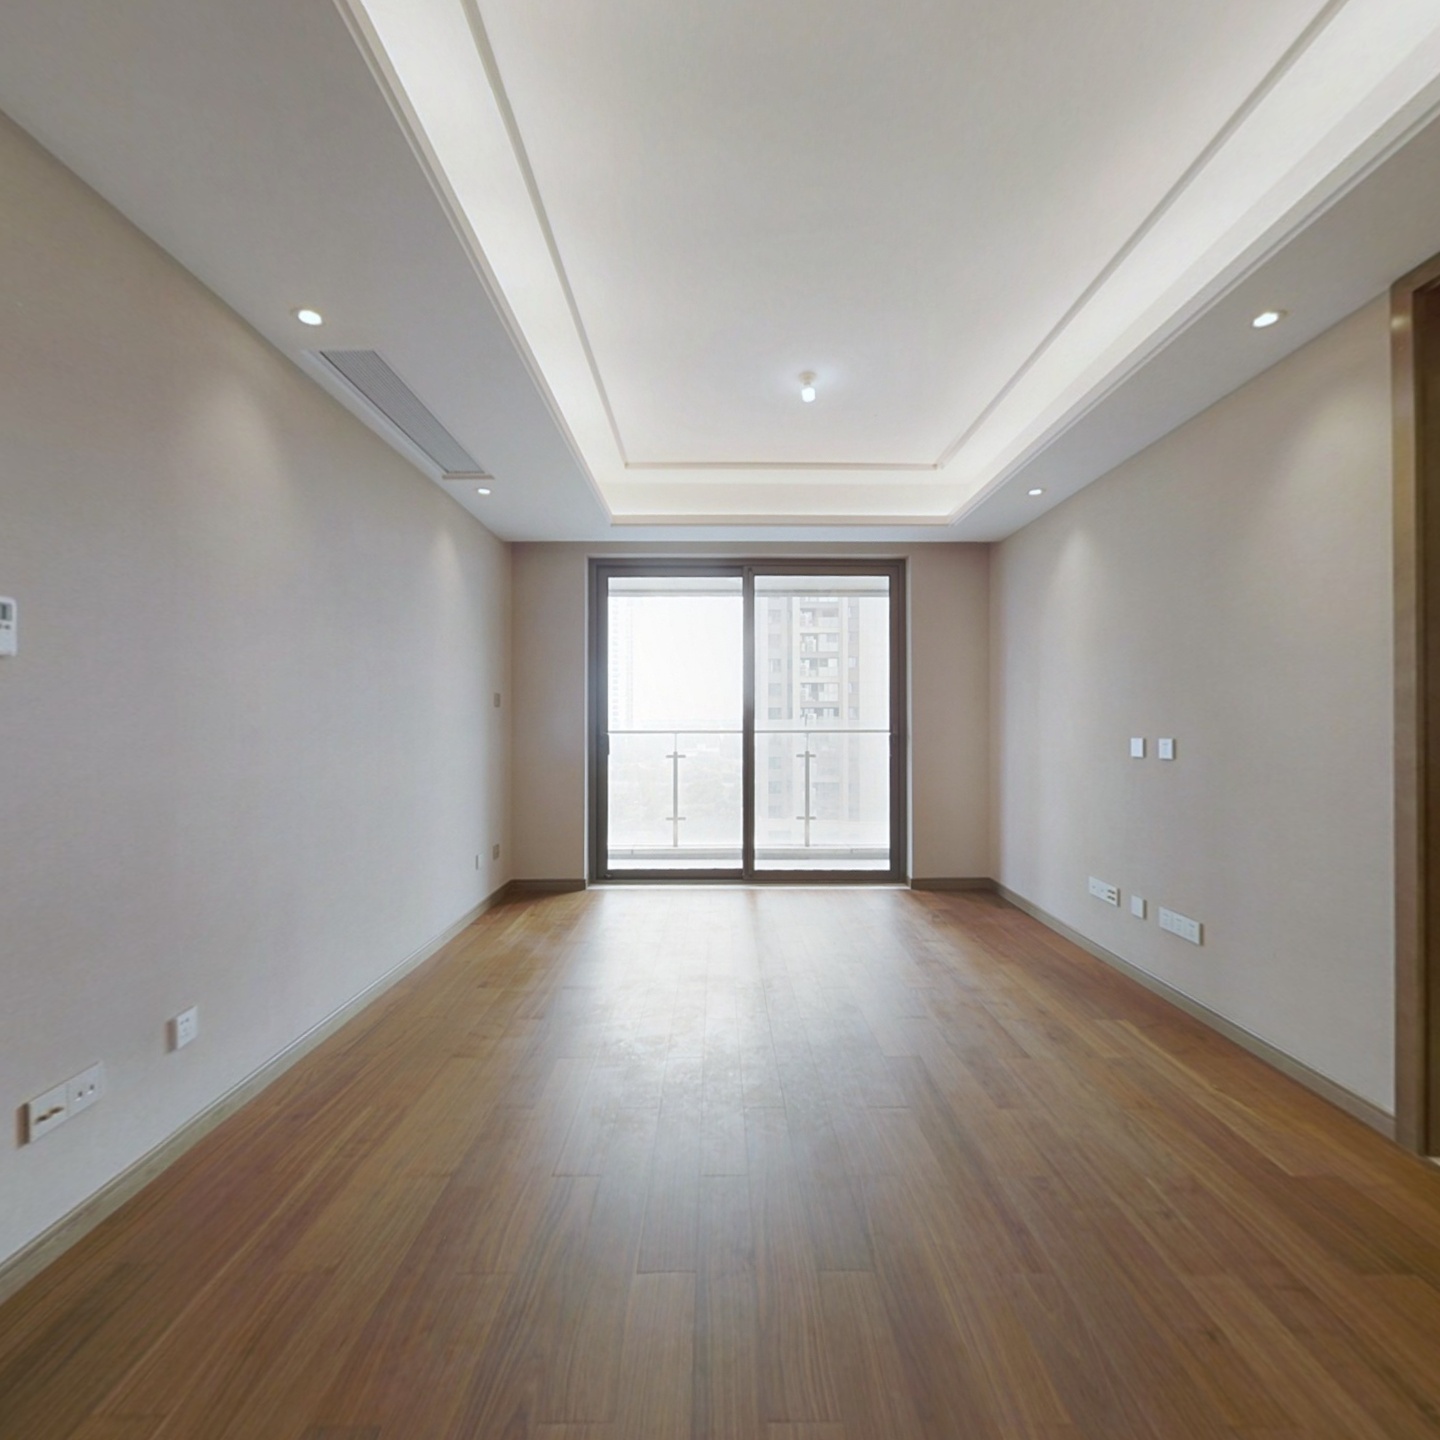 仁恒公园世纪 三室二厅 科技住宅 采光刺眼 环境优美